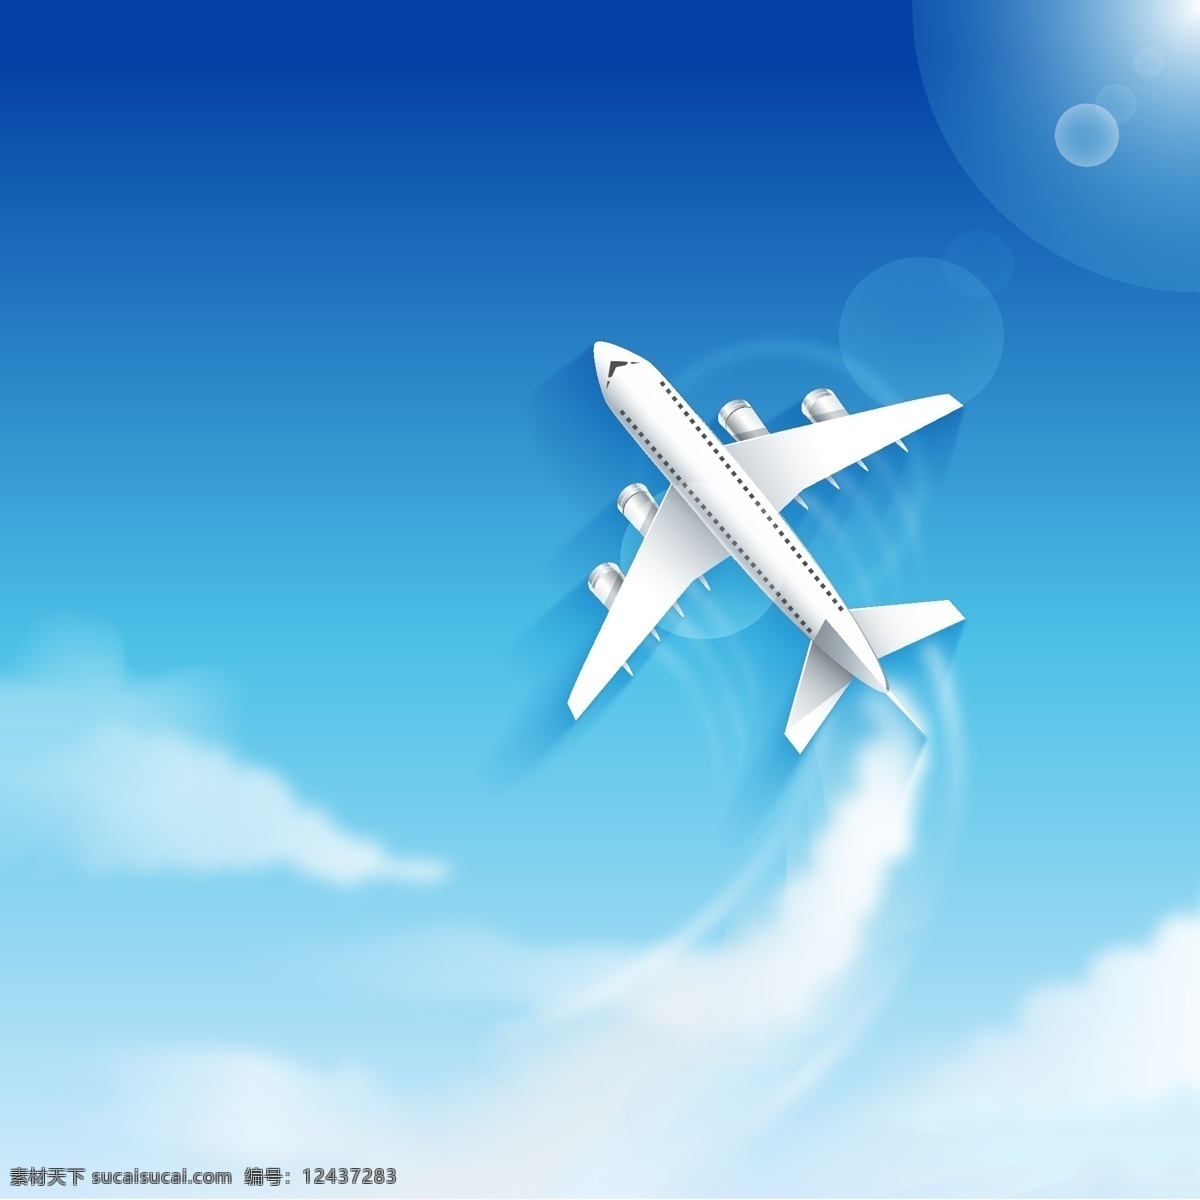 蓝天 中 翱翔 飞机 矢量 云 天空 旅行 客机 矢量图 ai格式 卡通飞机 现代科技 交通工具